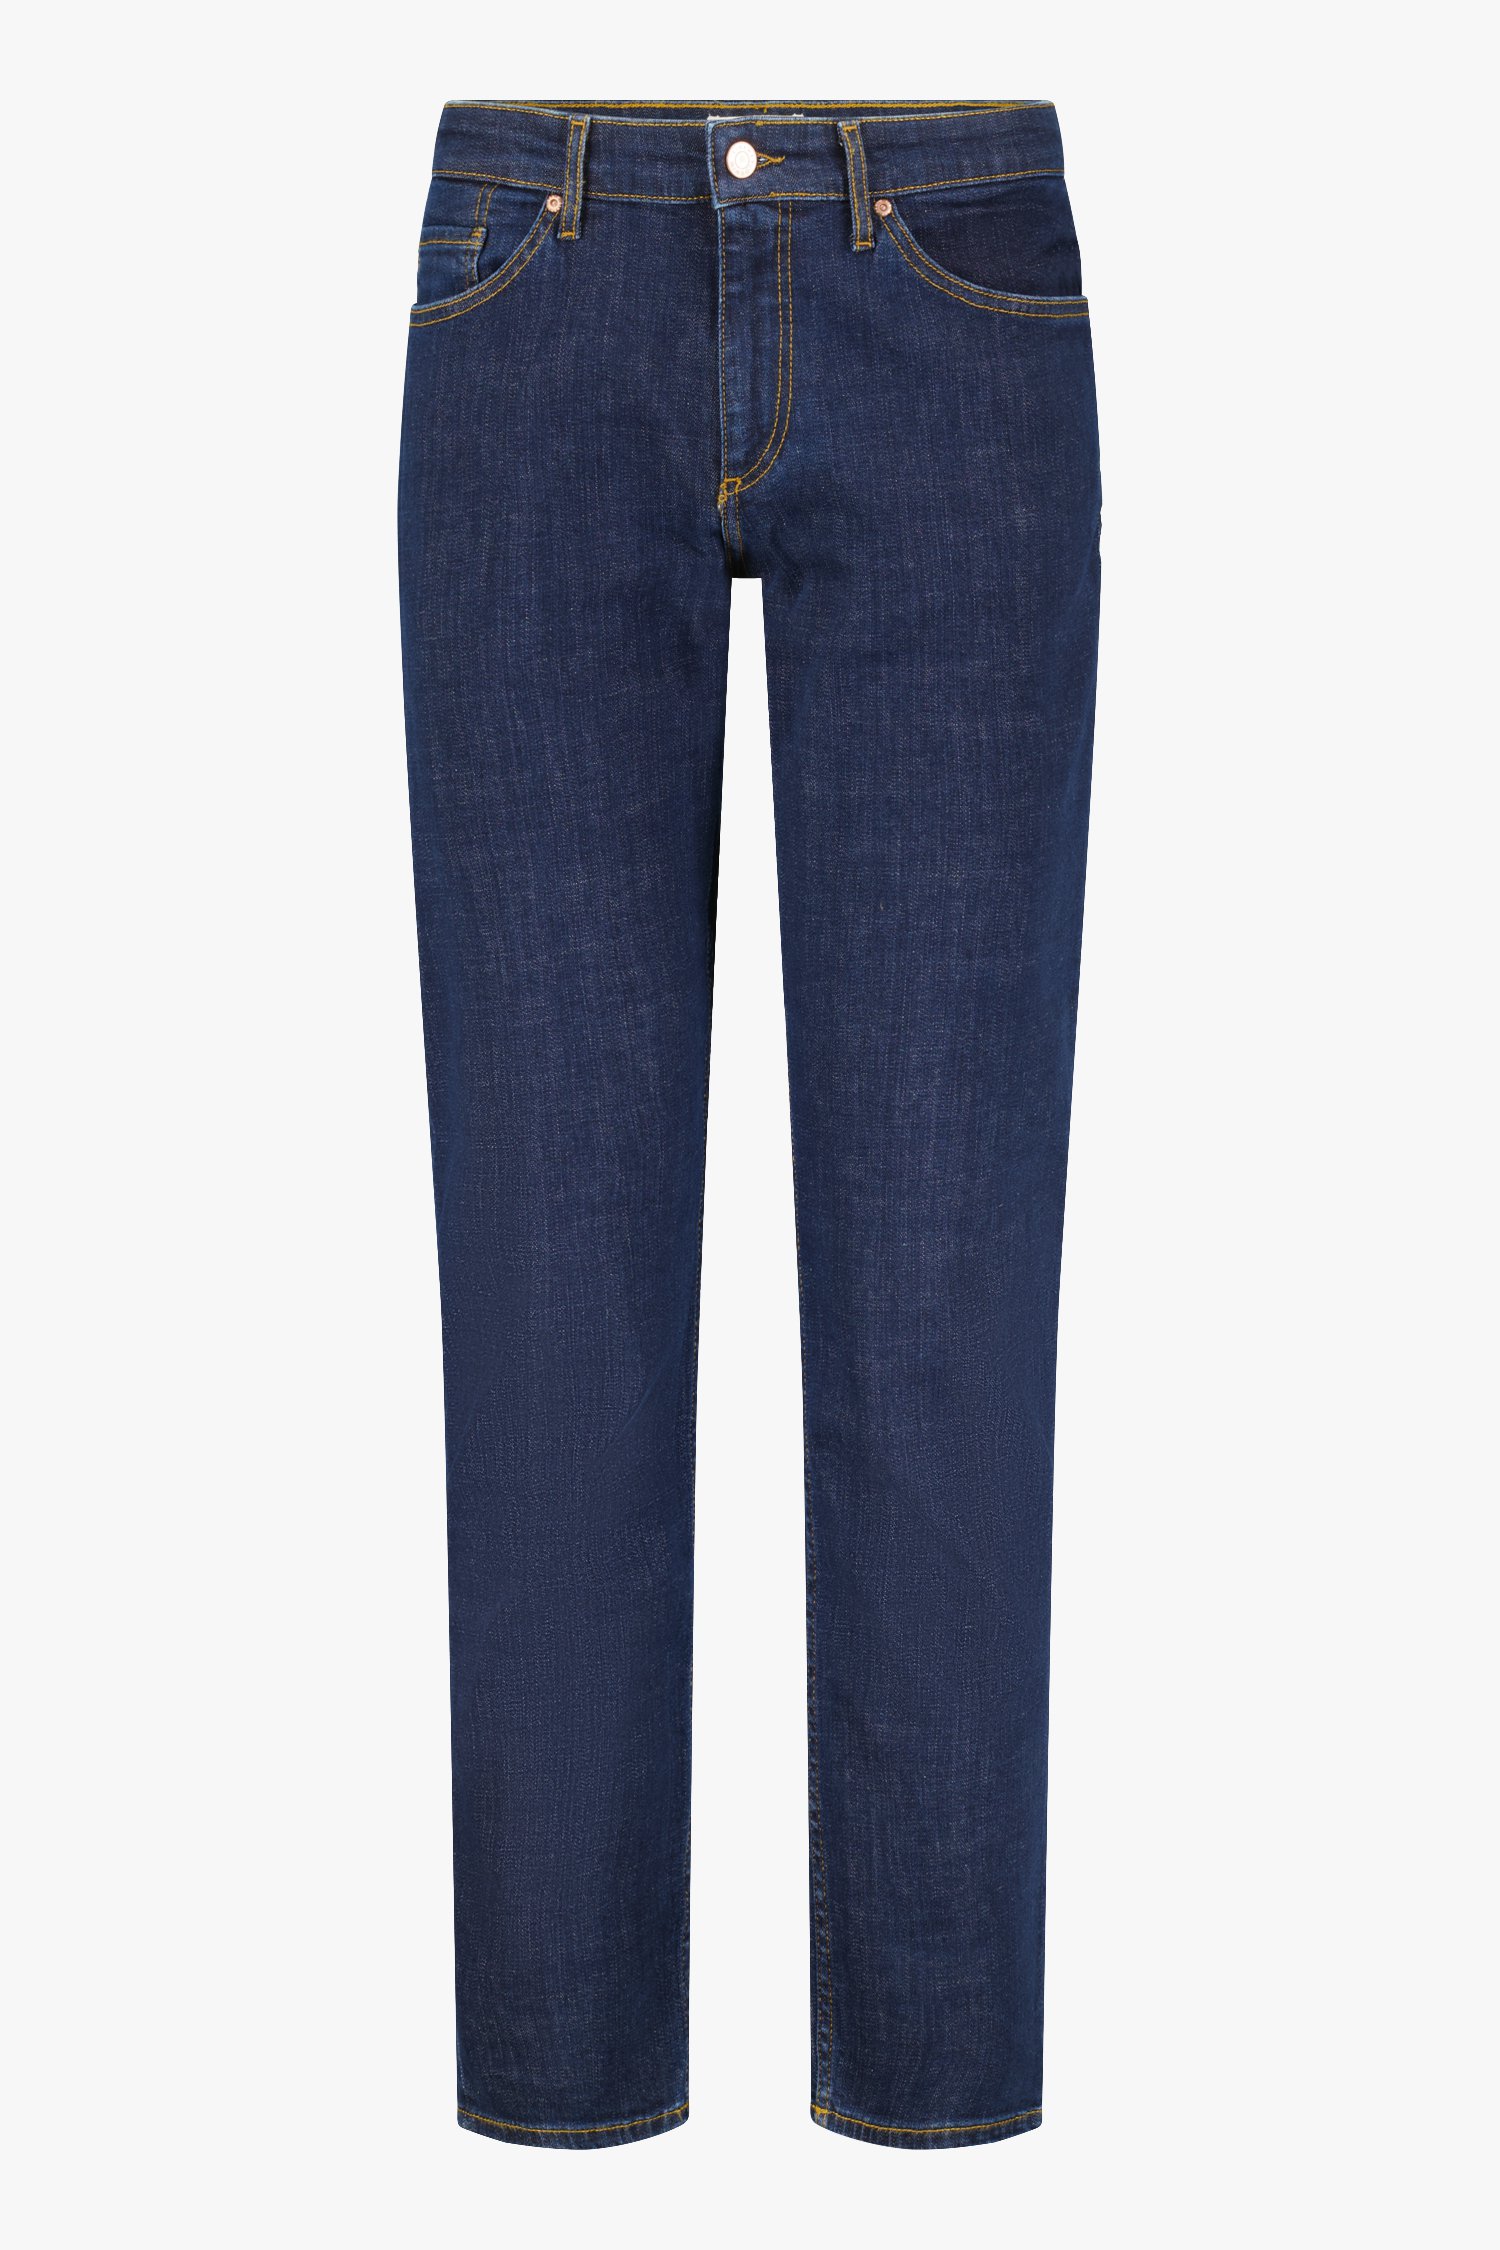 Navy jeans - Tom - regular fit - L34 van Liberty Island Denim voor Heren